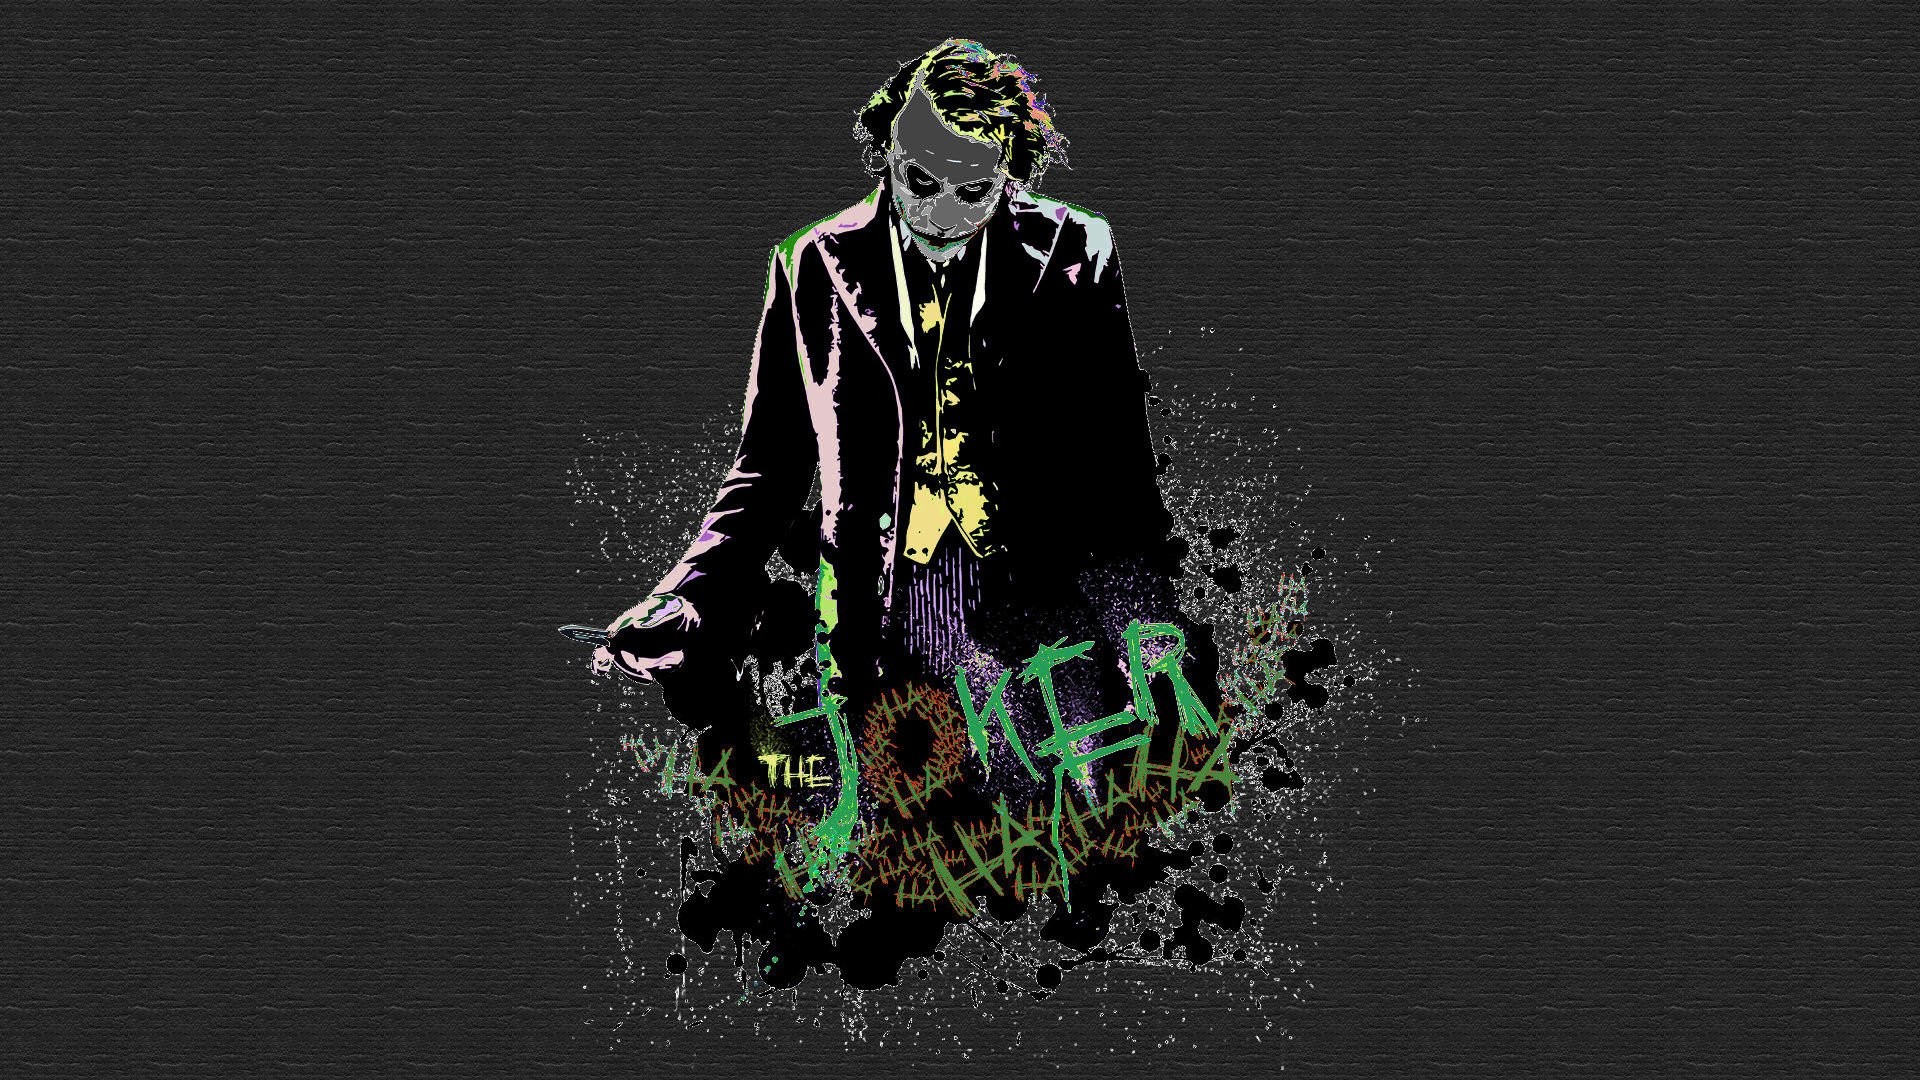 1920x1080 Batman The Joker Heath Ledger wallpaper |  | 264219 | WallpaperUP